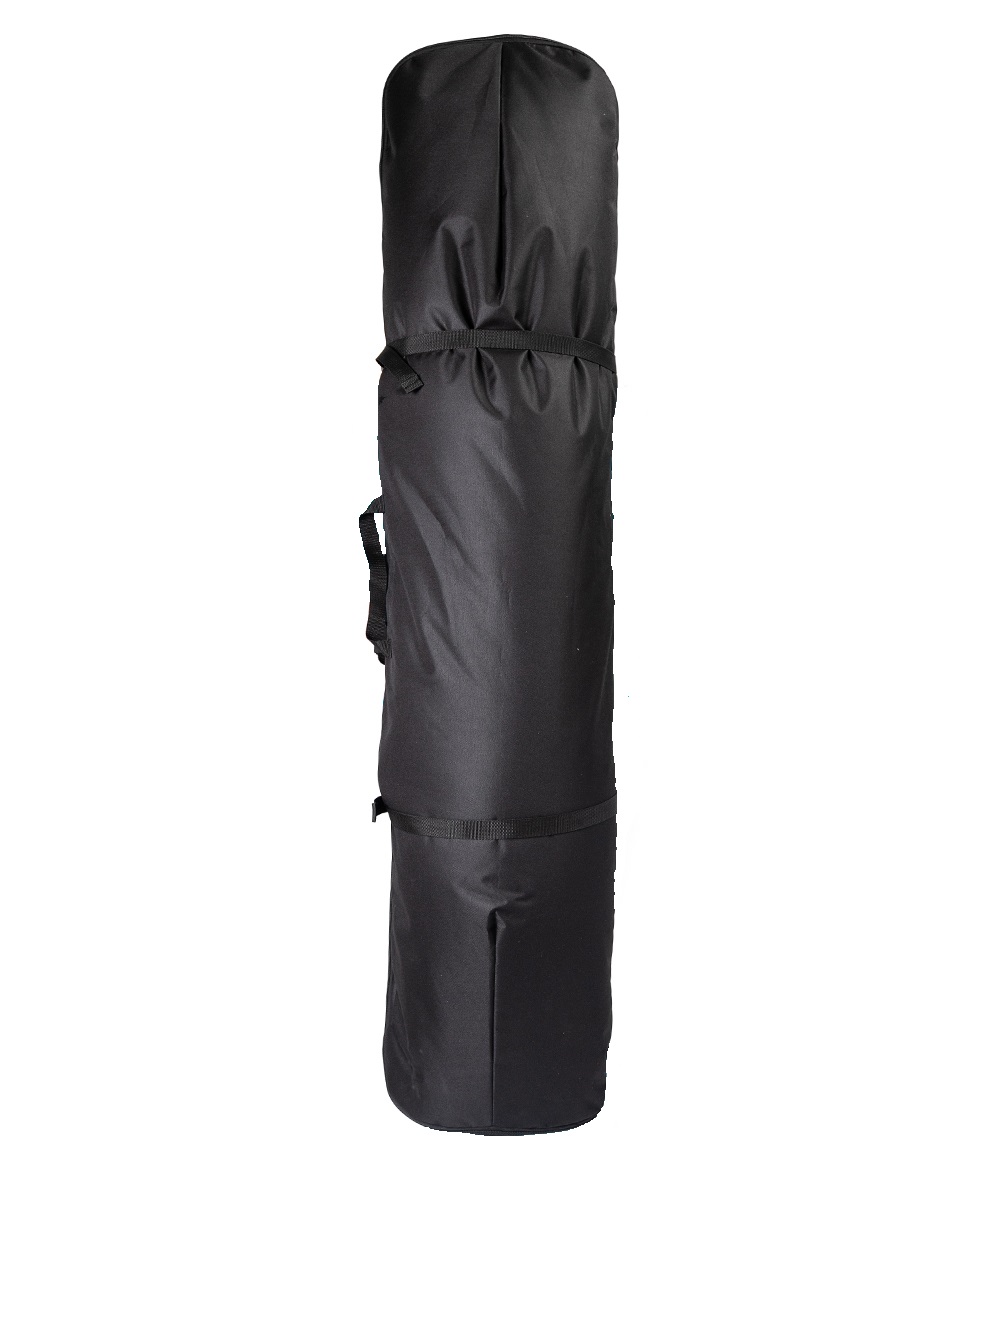 Чехол для сноуборда Рюкзак длина 150 см цвет чёрный